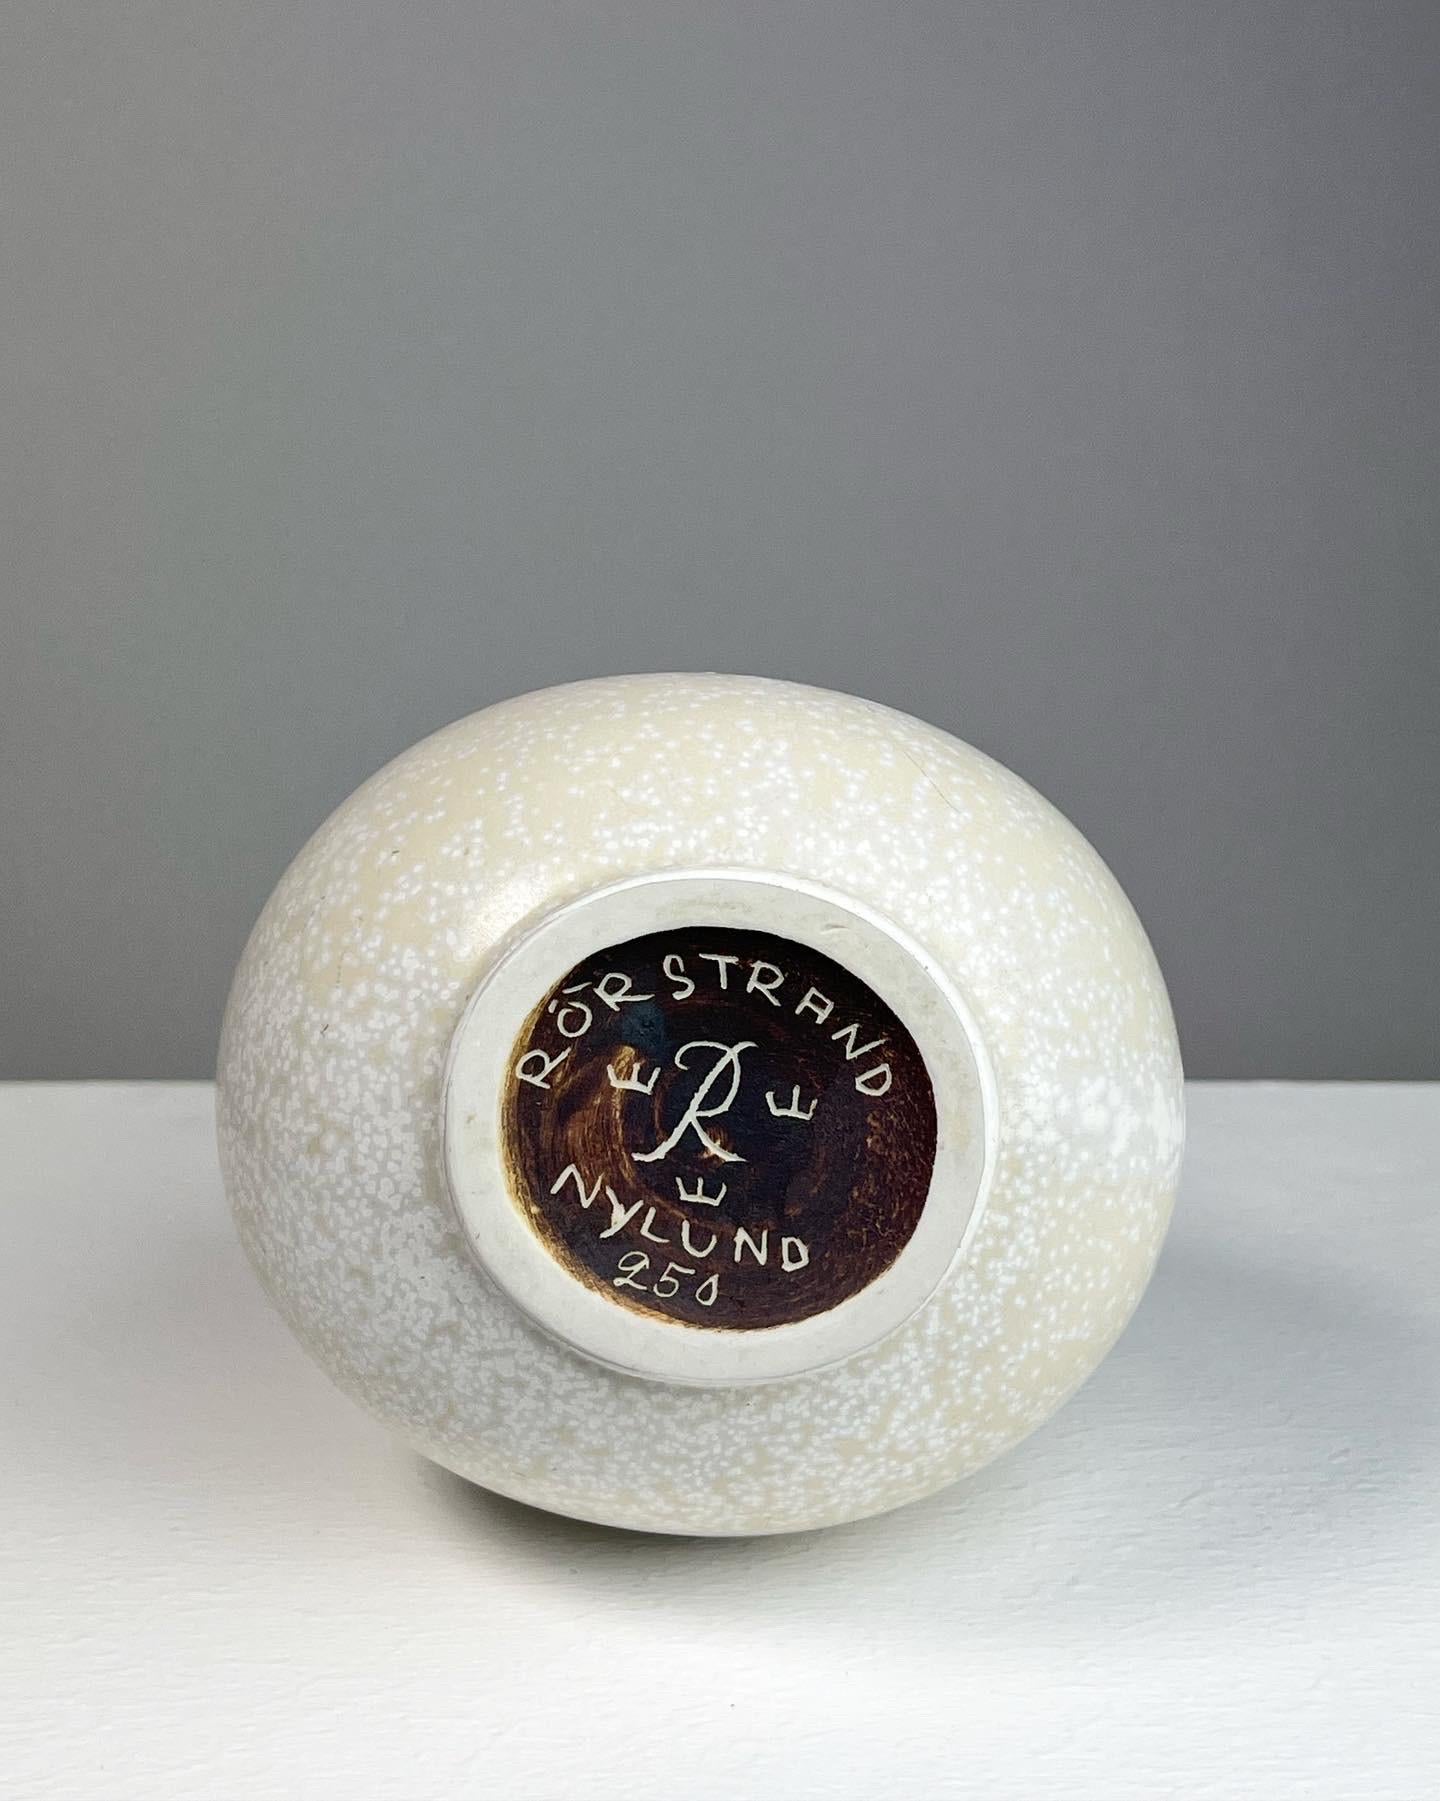 Gunnar Nylund Stoneware Pitcher Vase White Mimosa Glaze Rörstrand Sweden 1950s For Sale 3